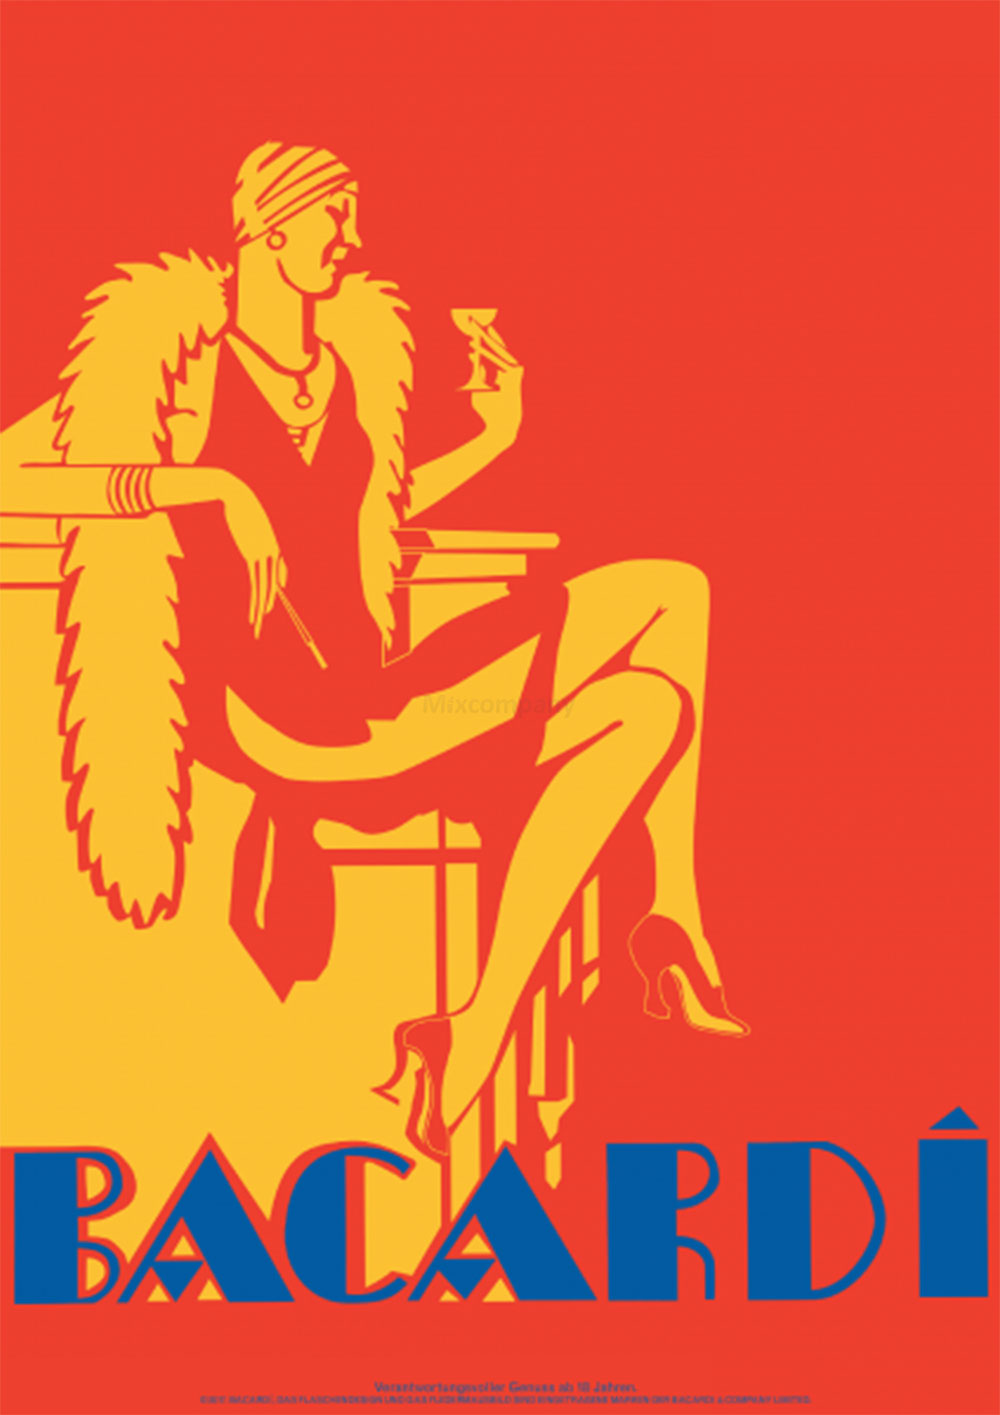 Bacardi Geschenkset - Gläser / Cola / Bacardi Ron 8 Anos Gran Reserva 8 Jahre Rum 0,7l (40% Vol) + 2er Set Gläser + 2x Coca Cola 0,2L Inkl. Pfand MEHRWEG- [Enthält Sulfite]